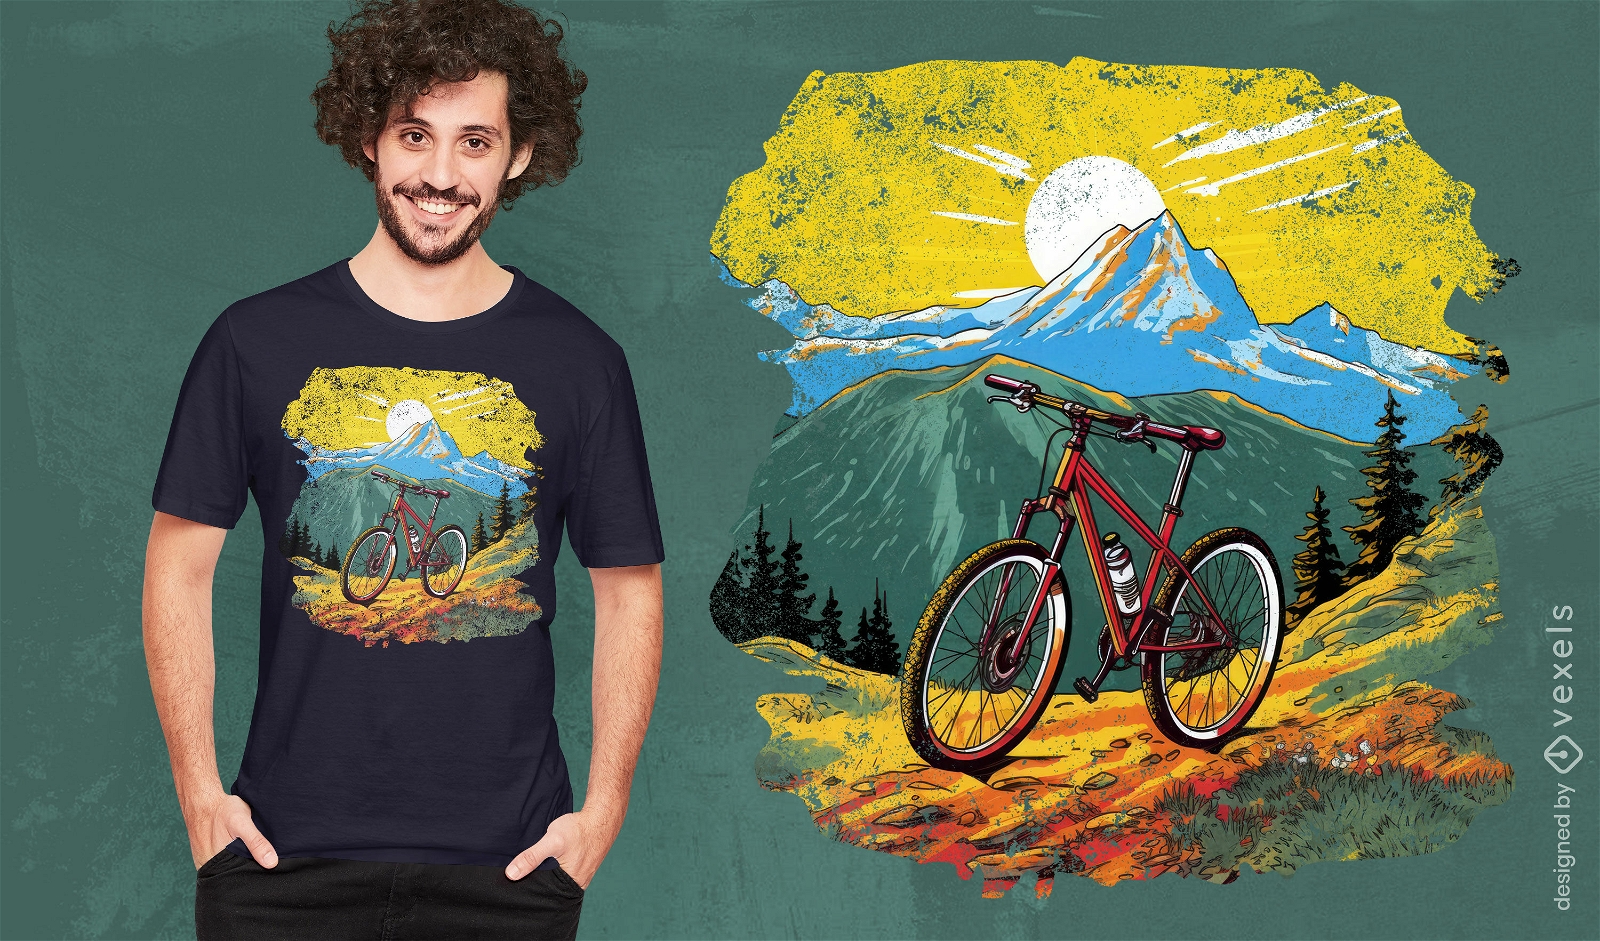 Mountain biking scene t-shirt design